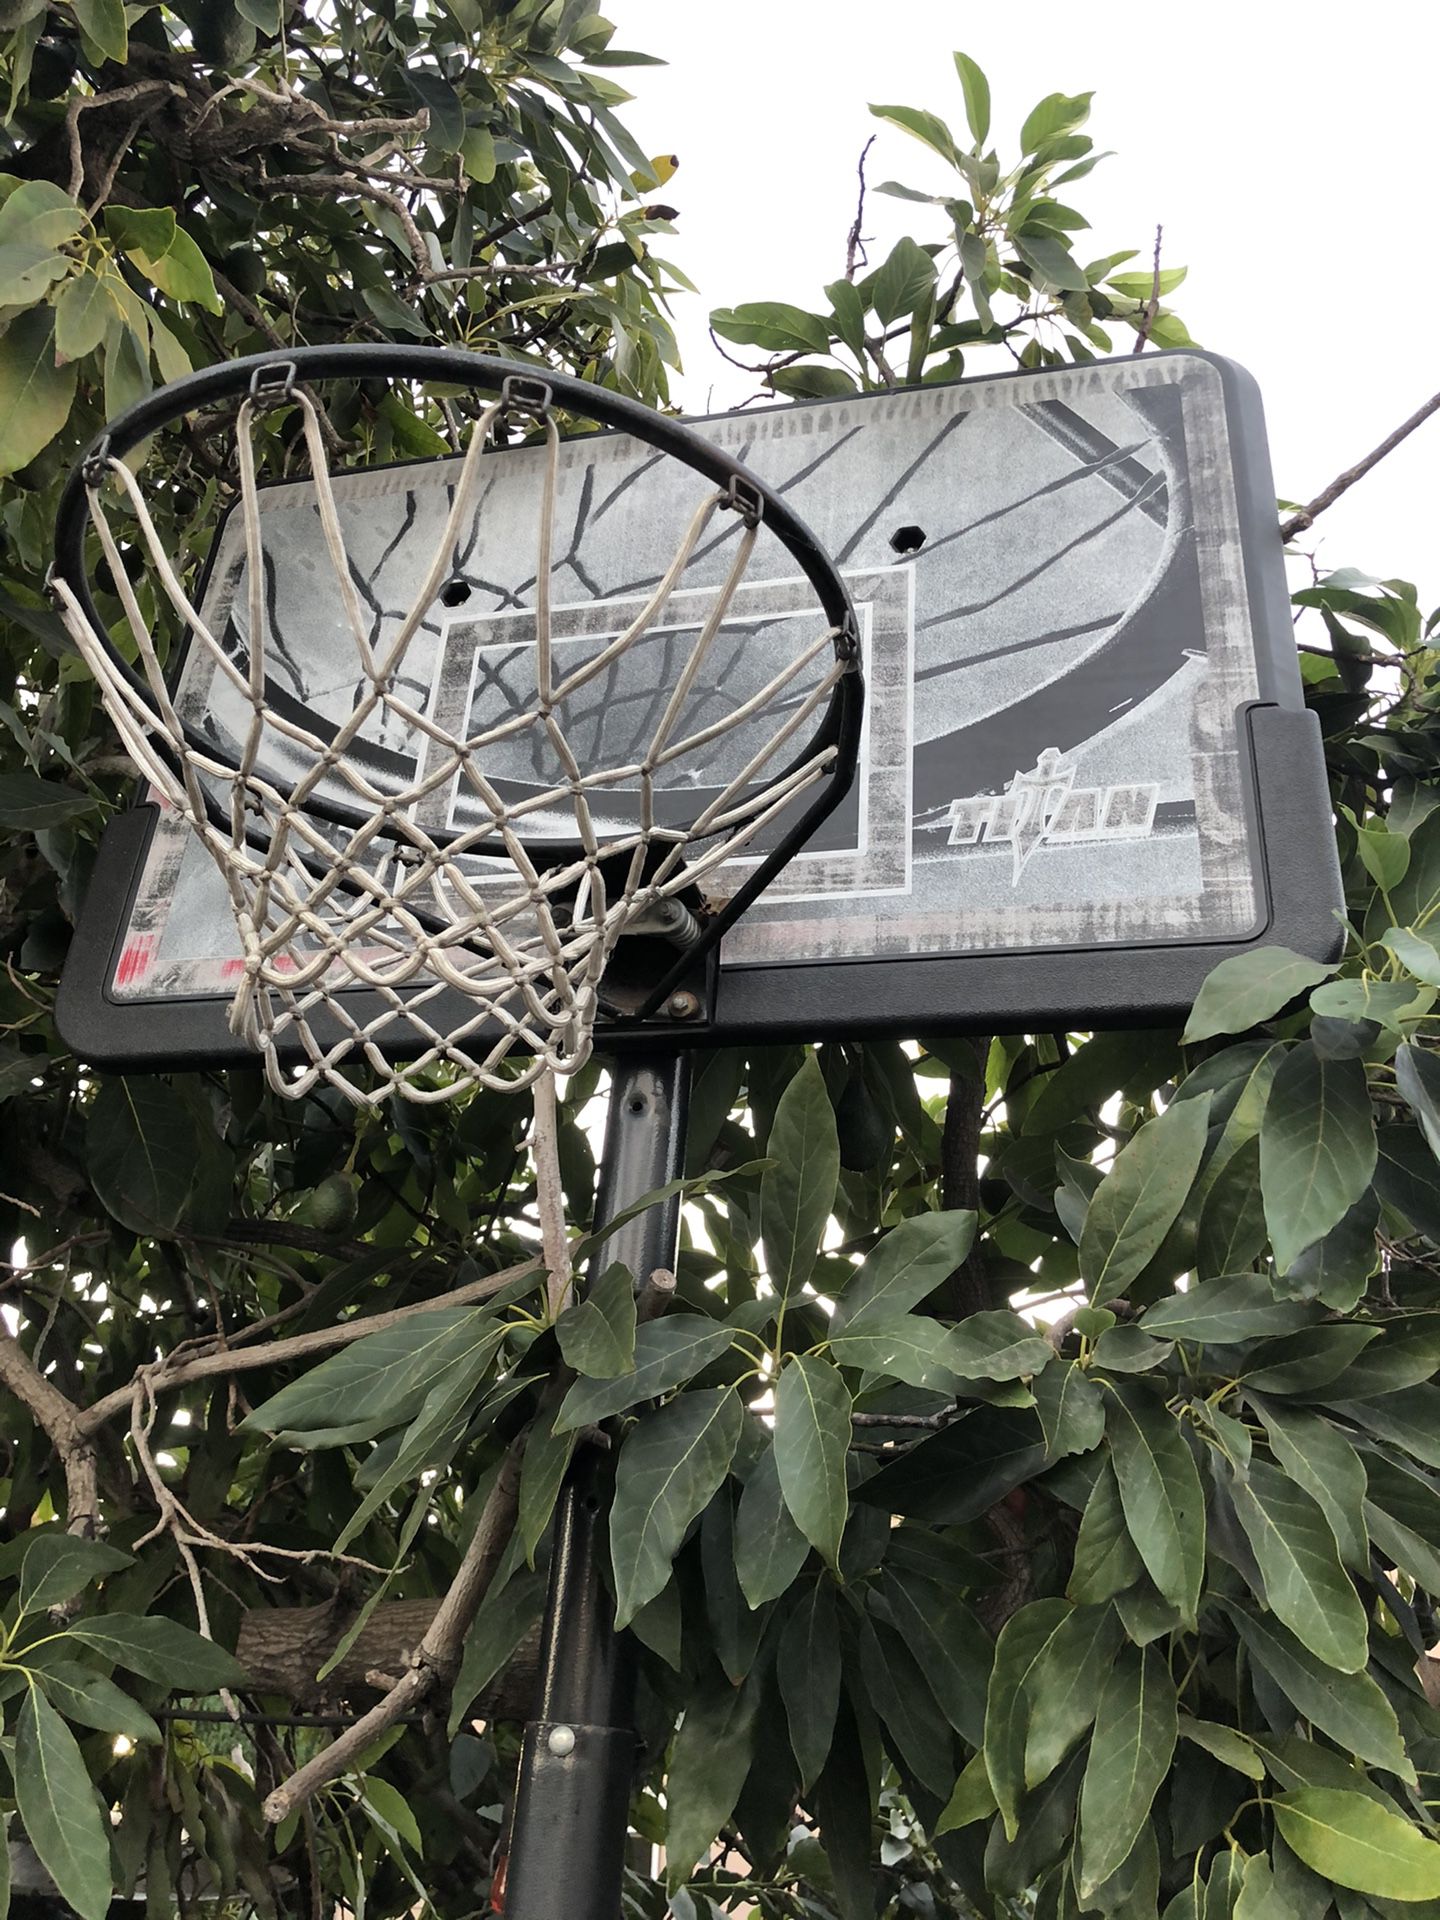 Full size basketball hoop